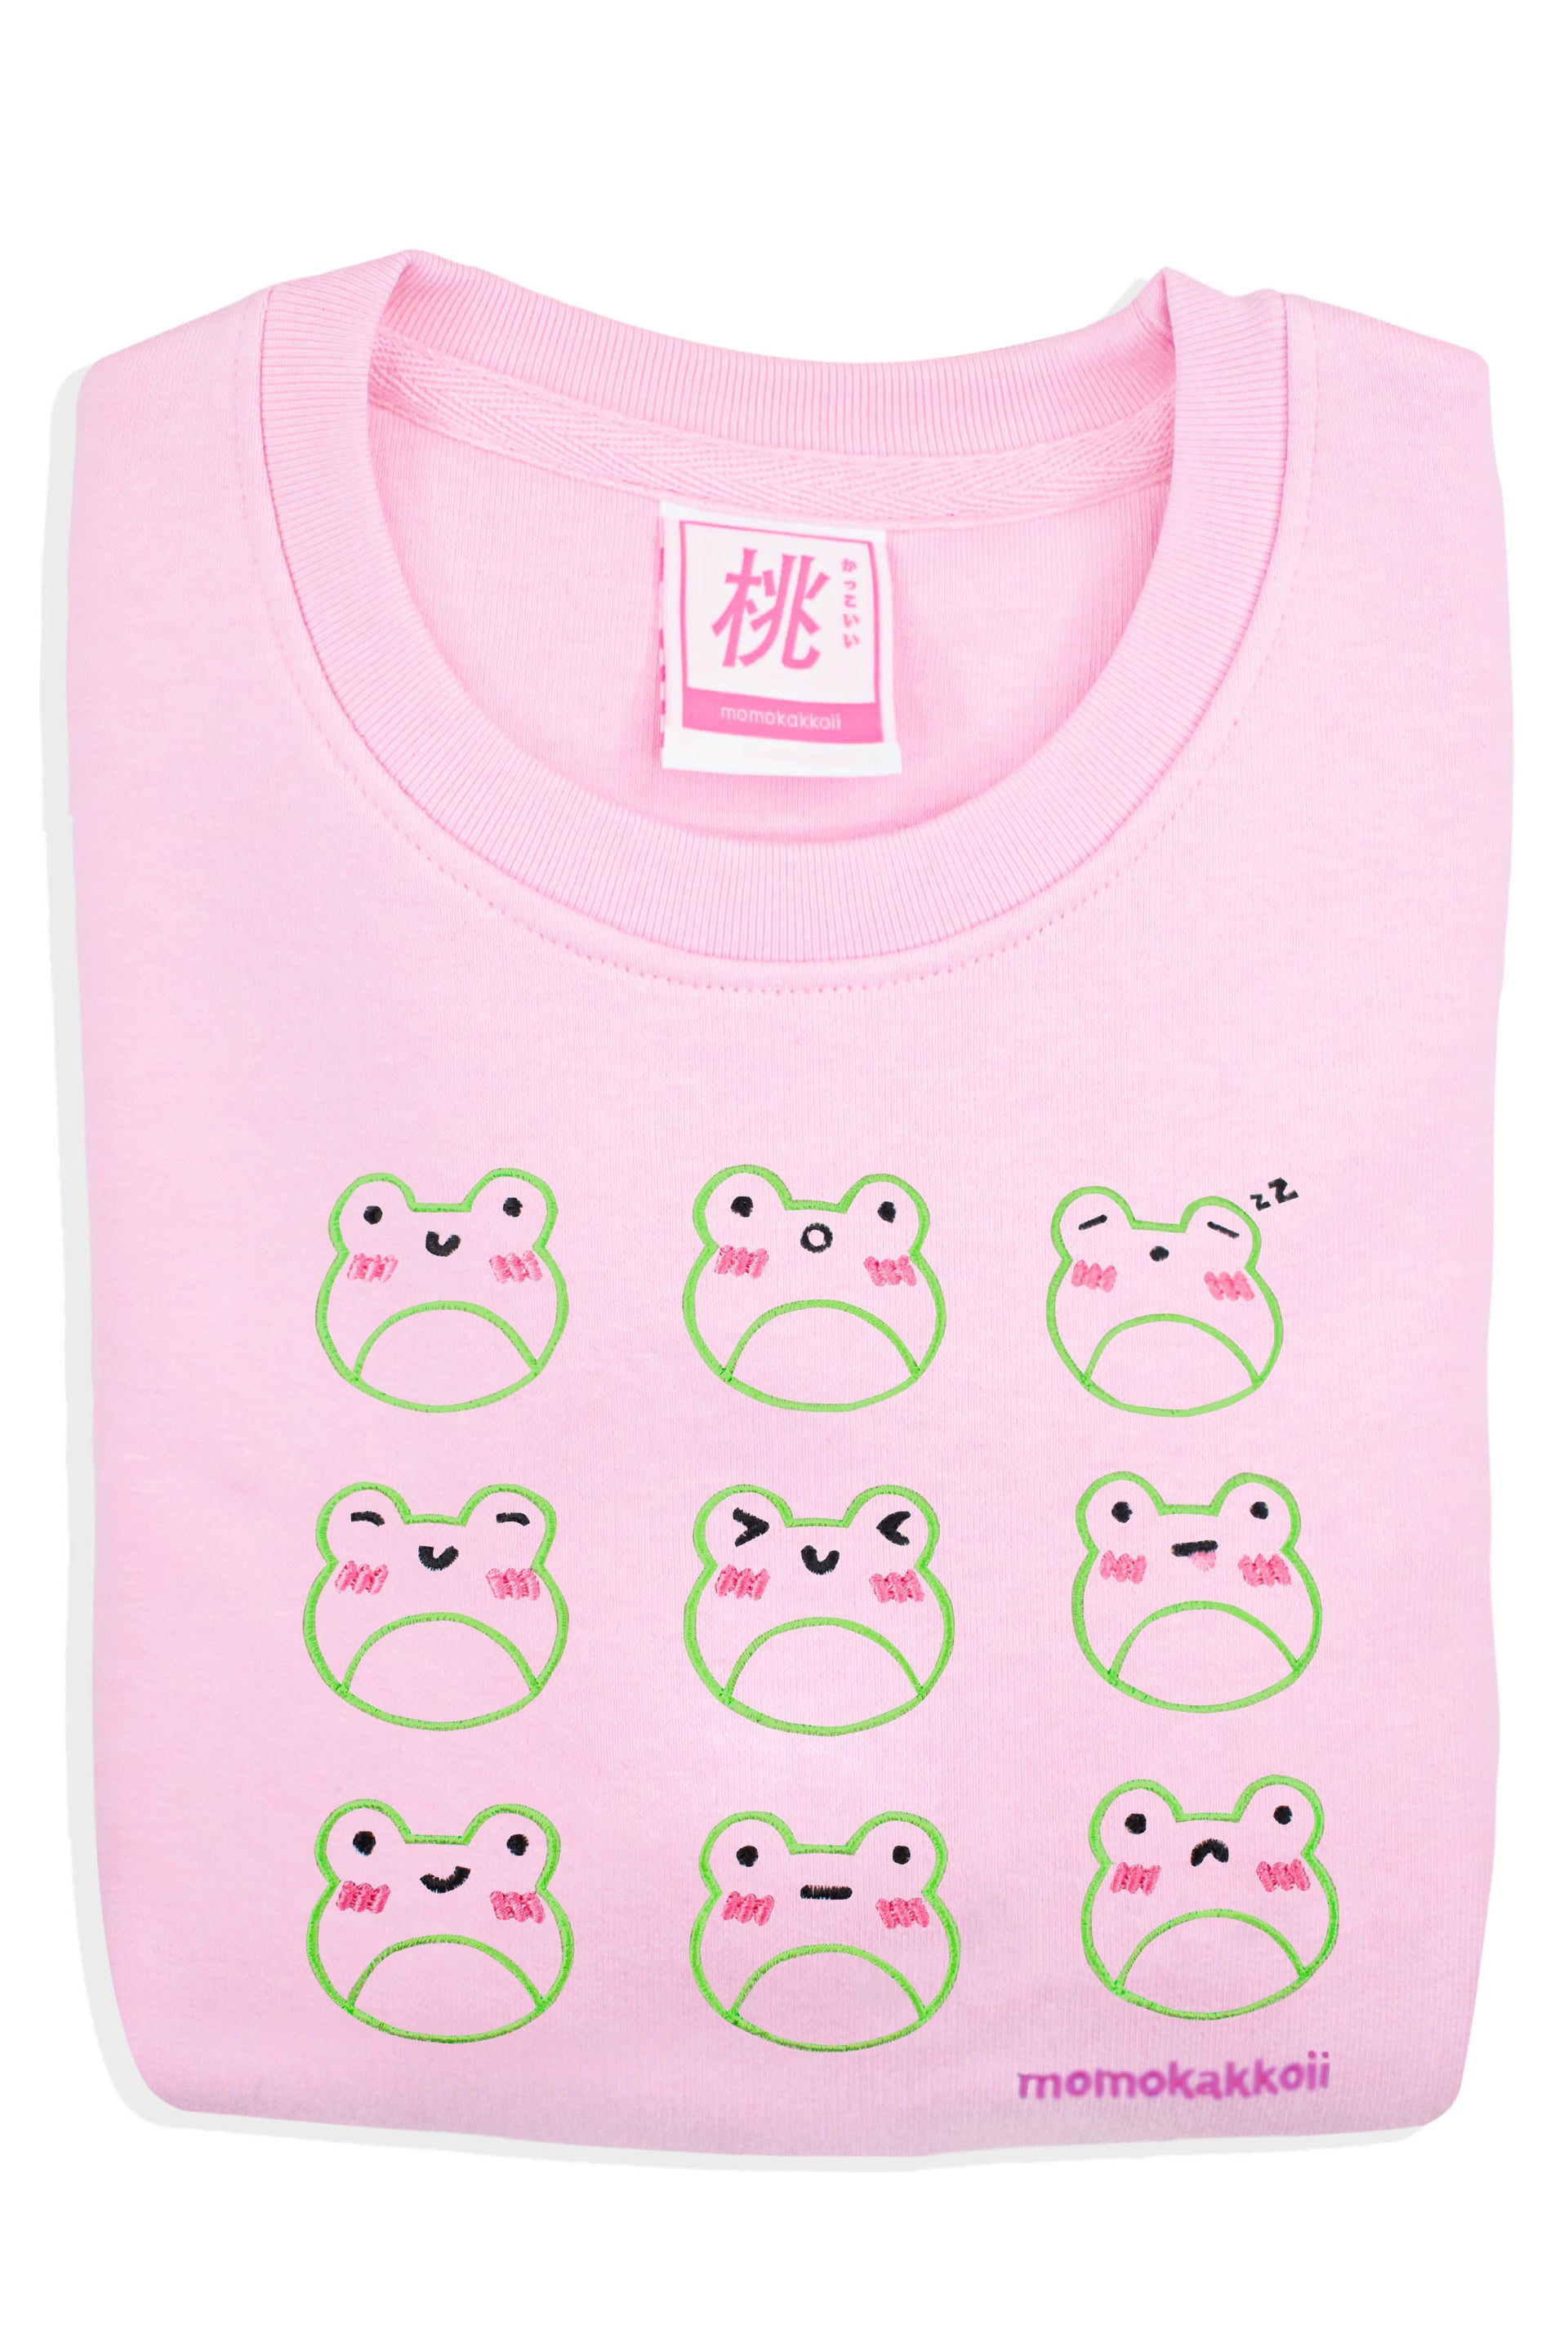 Organic Cotton Froggy Moods Embroidered Sweatshirt - Momokakkoii